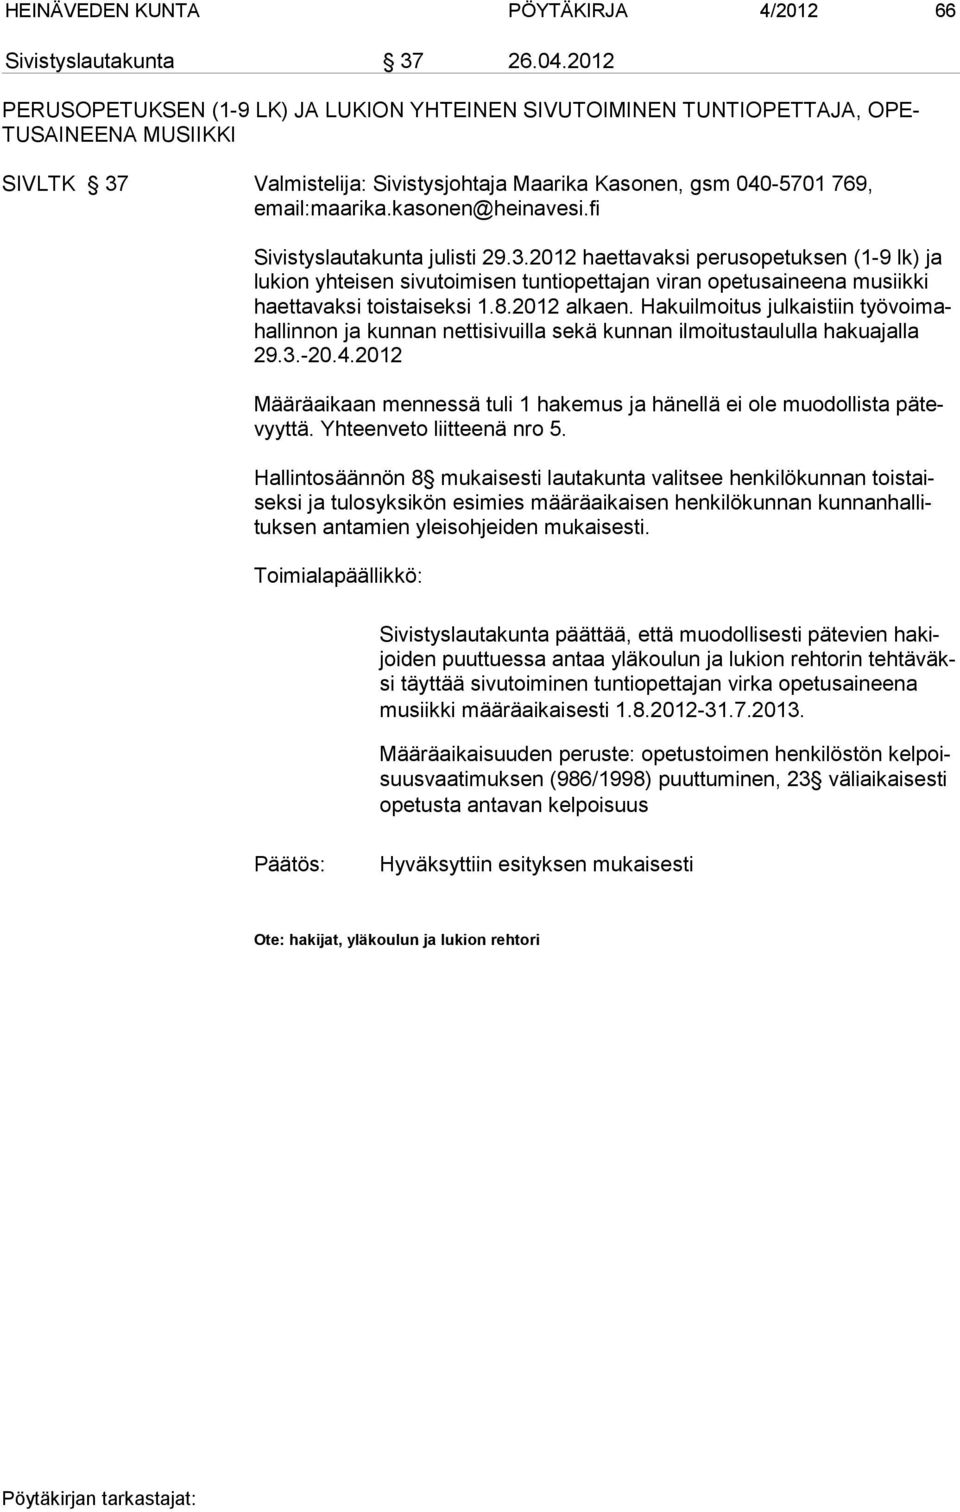 kasonen@heinavesi.fi Sivistyslautakunta julisti 29.3.2012 haettavaksi perusopetuksen (1-9 lk) ja lu kion yhteisen sivutoimisen tuntiopettajan viran opetusaineena musiikki haettavaksi toistaiseksi 1.8.